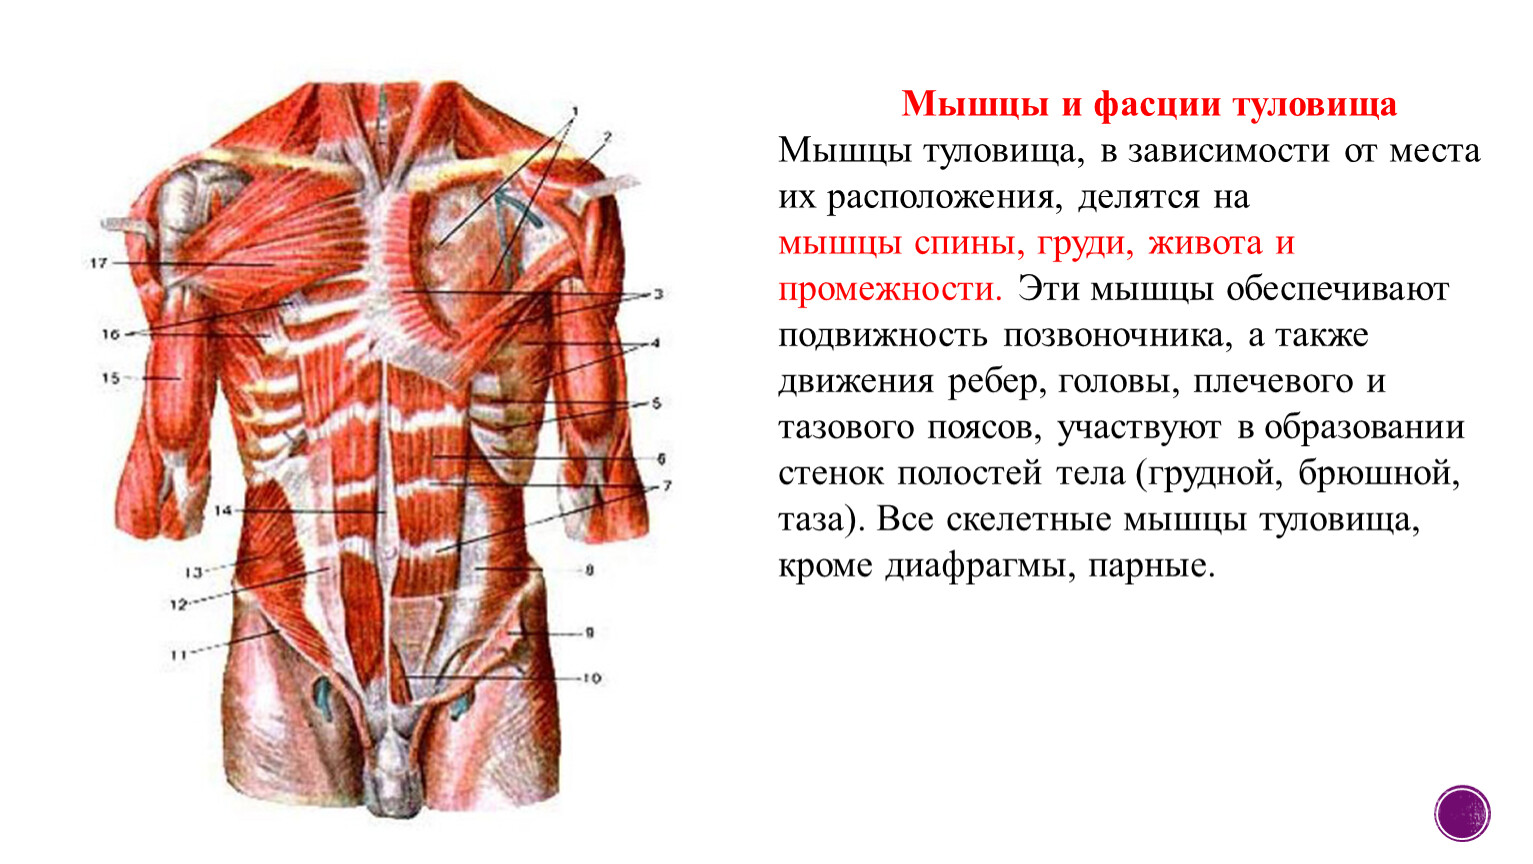 Фасции спины. Поверхностные мышцы груди, туловища спереди. Фасции мышцы спины человека анатомия. Мышцы и фасции спины и грудины анатомия. Мышцы спины и фасции туловища.